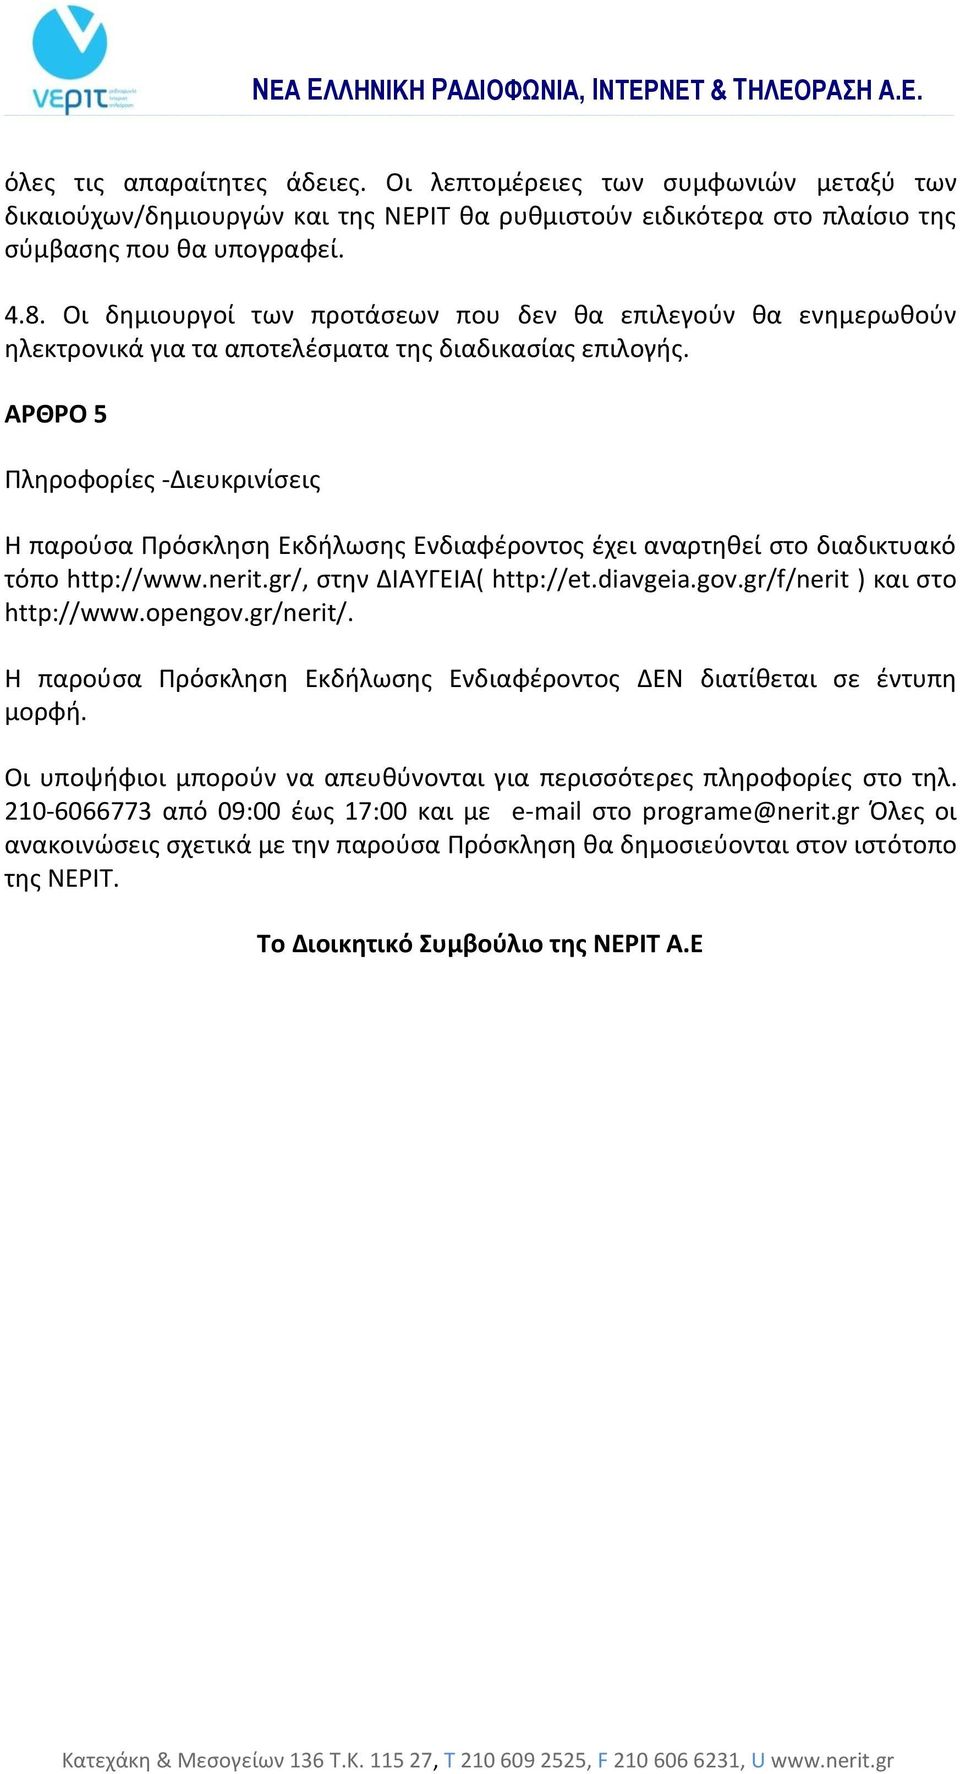 ΑΡΘΡΟ 5 Πληροφορίες -Διευκρινίσεις Η παρούσα Πρόσκληση Εκδήλωσης Ενδιαφέροντος έχει αναρτηθεί στο διαδικτυακό τόπο http://www.nerit.gr/, στην ΔΙΑΥΓΕΙΑ( http://et.diavgeia.gov.